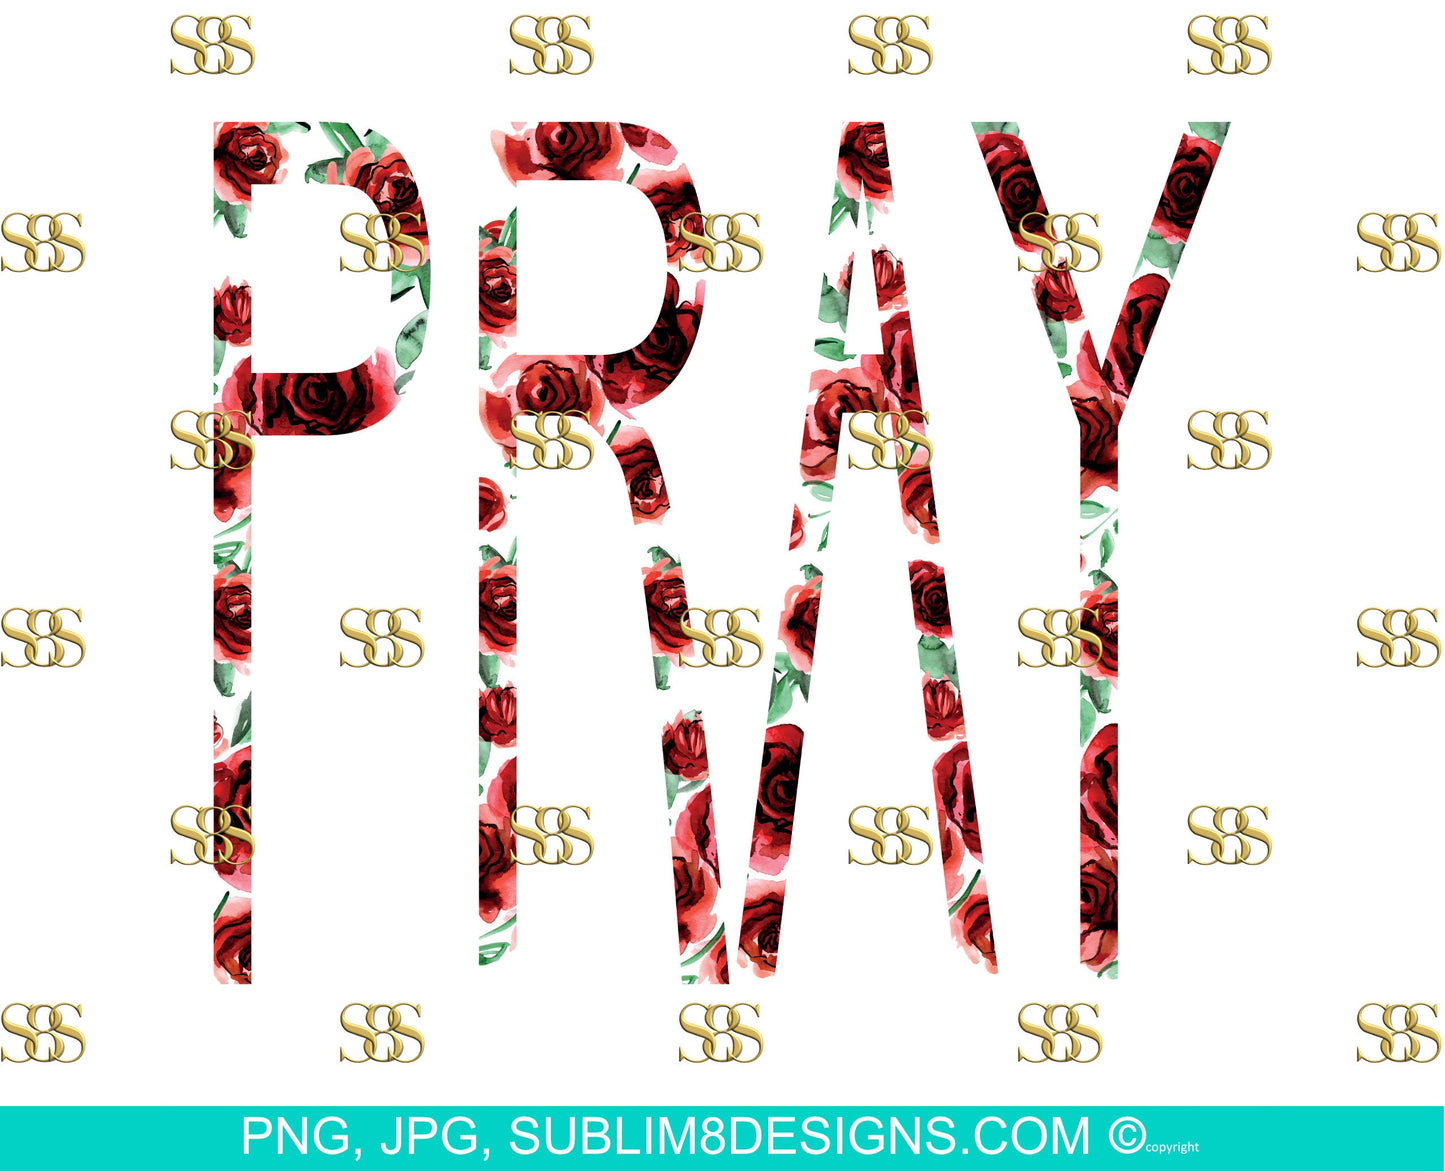 Pray | No Background | Floral Design | Rose png | God png | Sublimation Design PNG and JPG ONLY